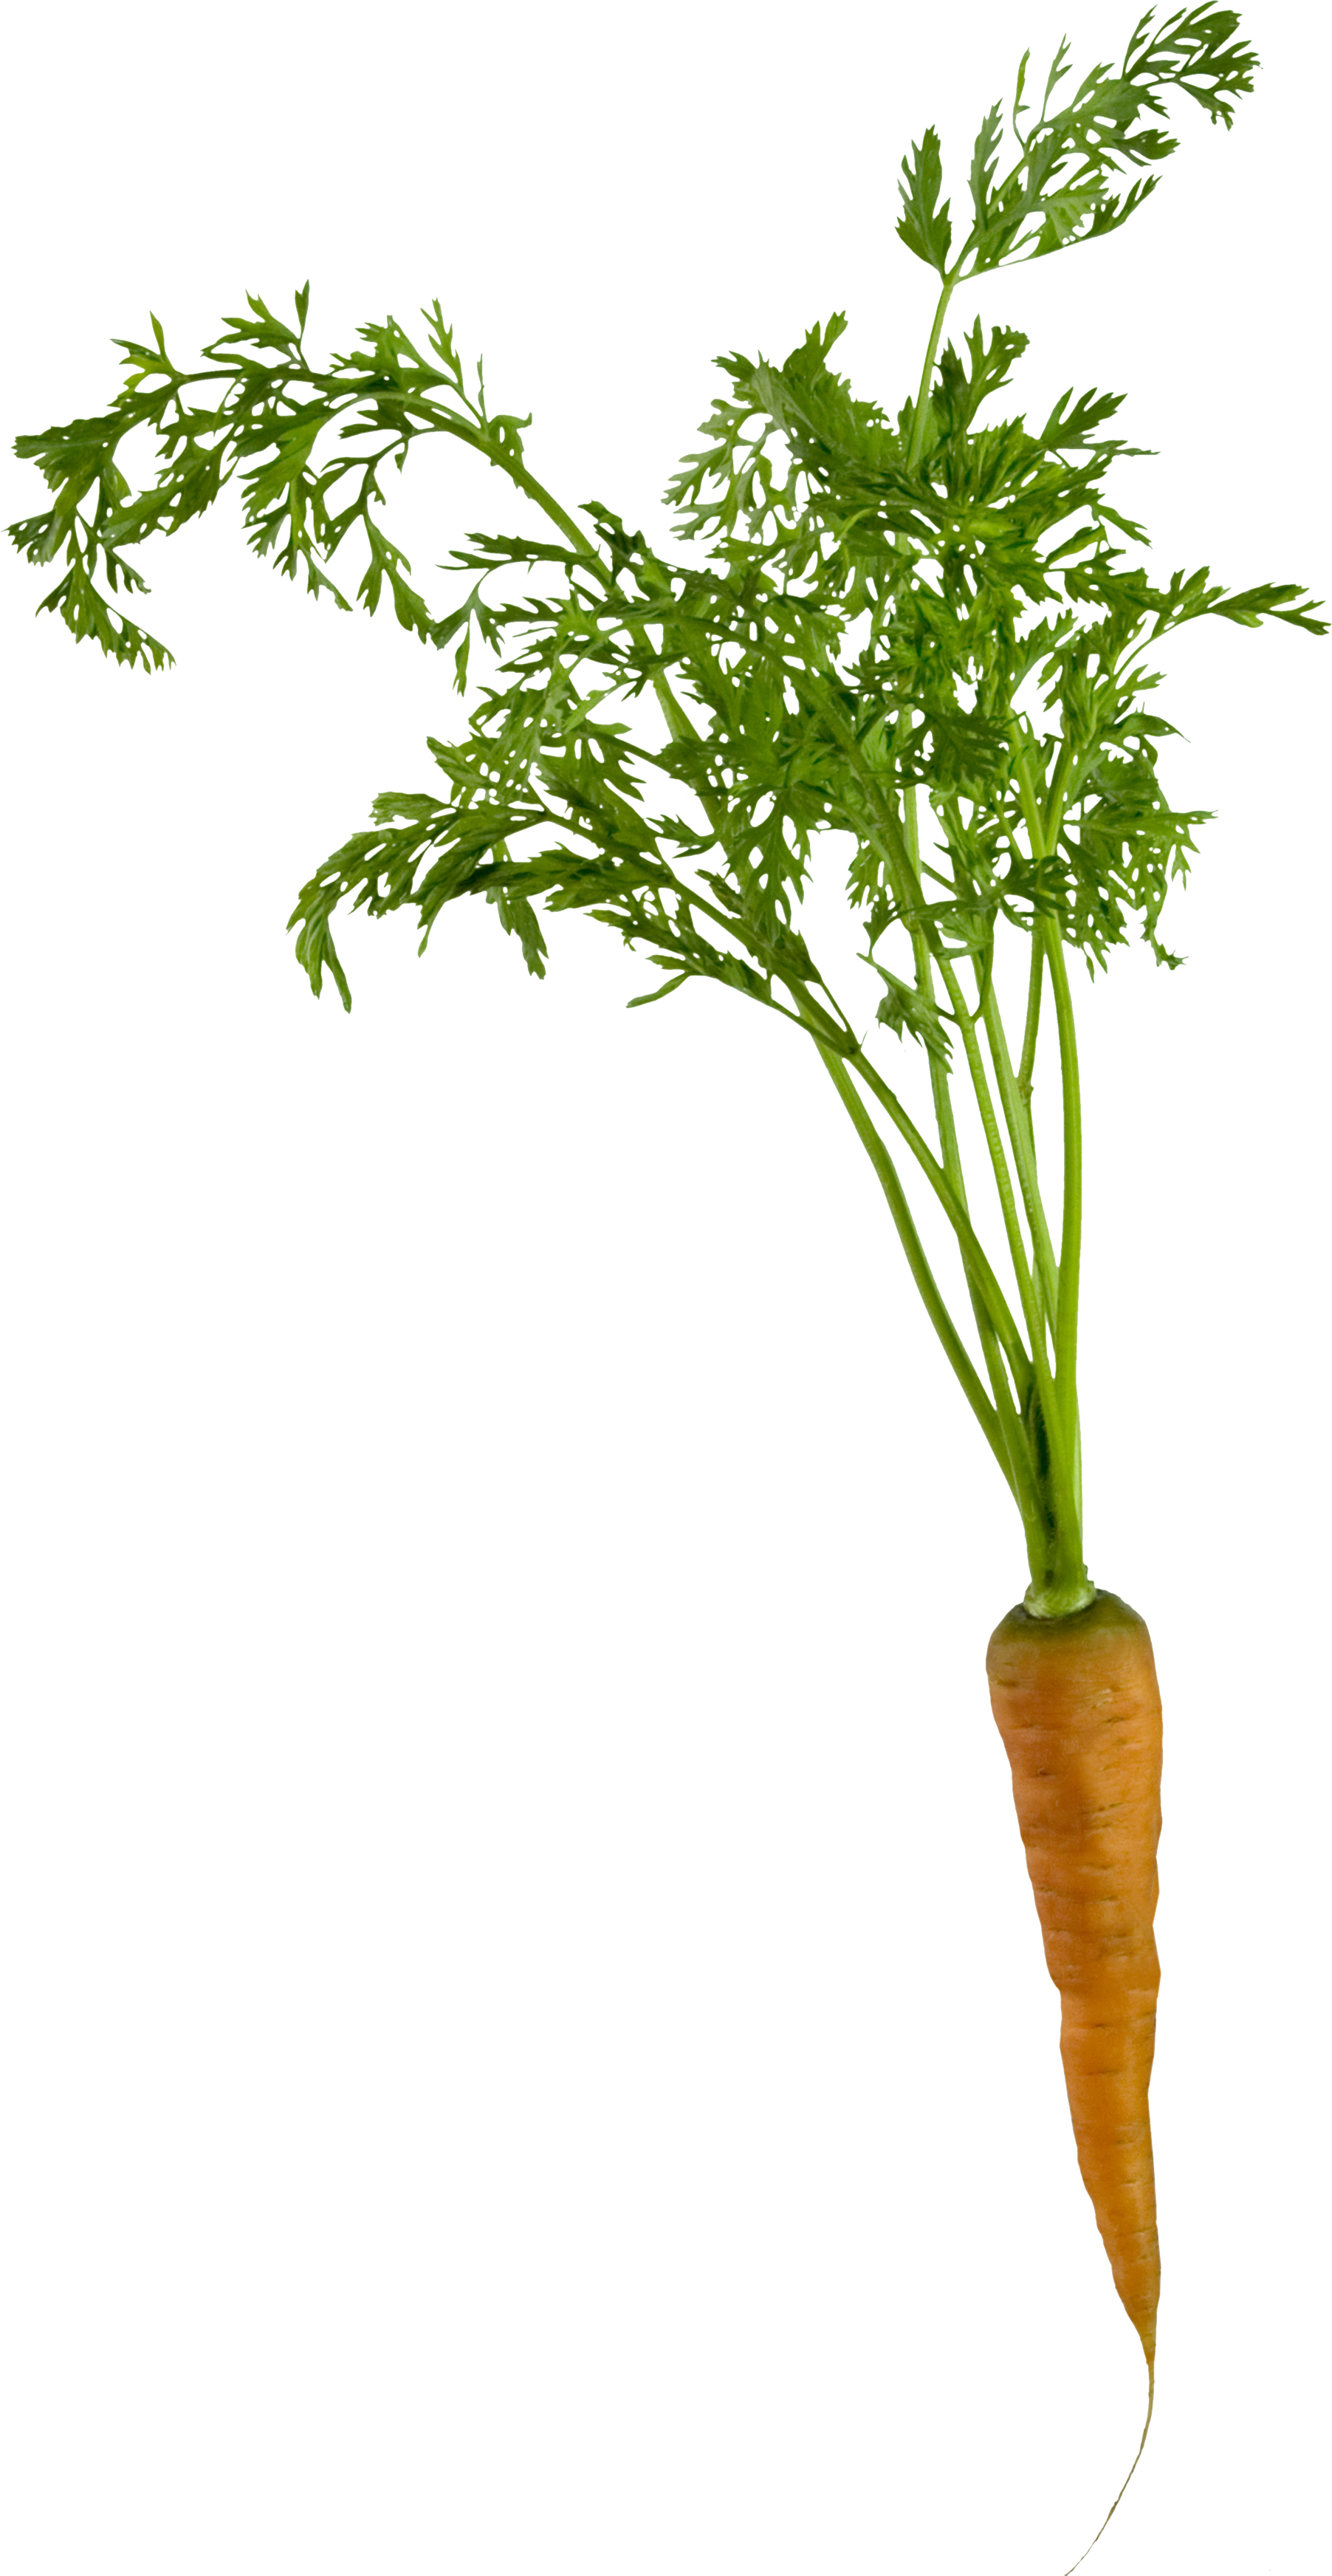 Вид сверху прозрачное изображение моркови